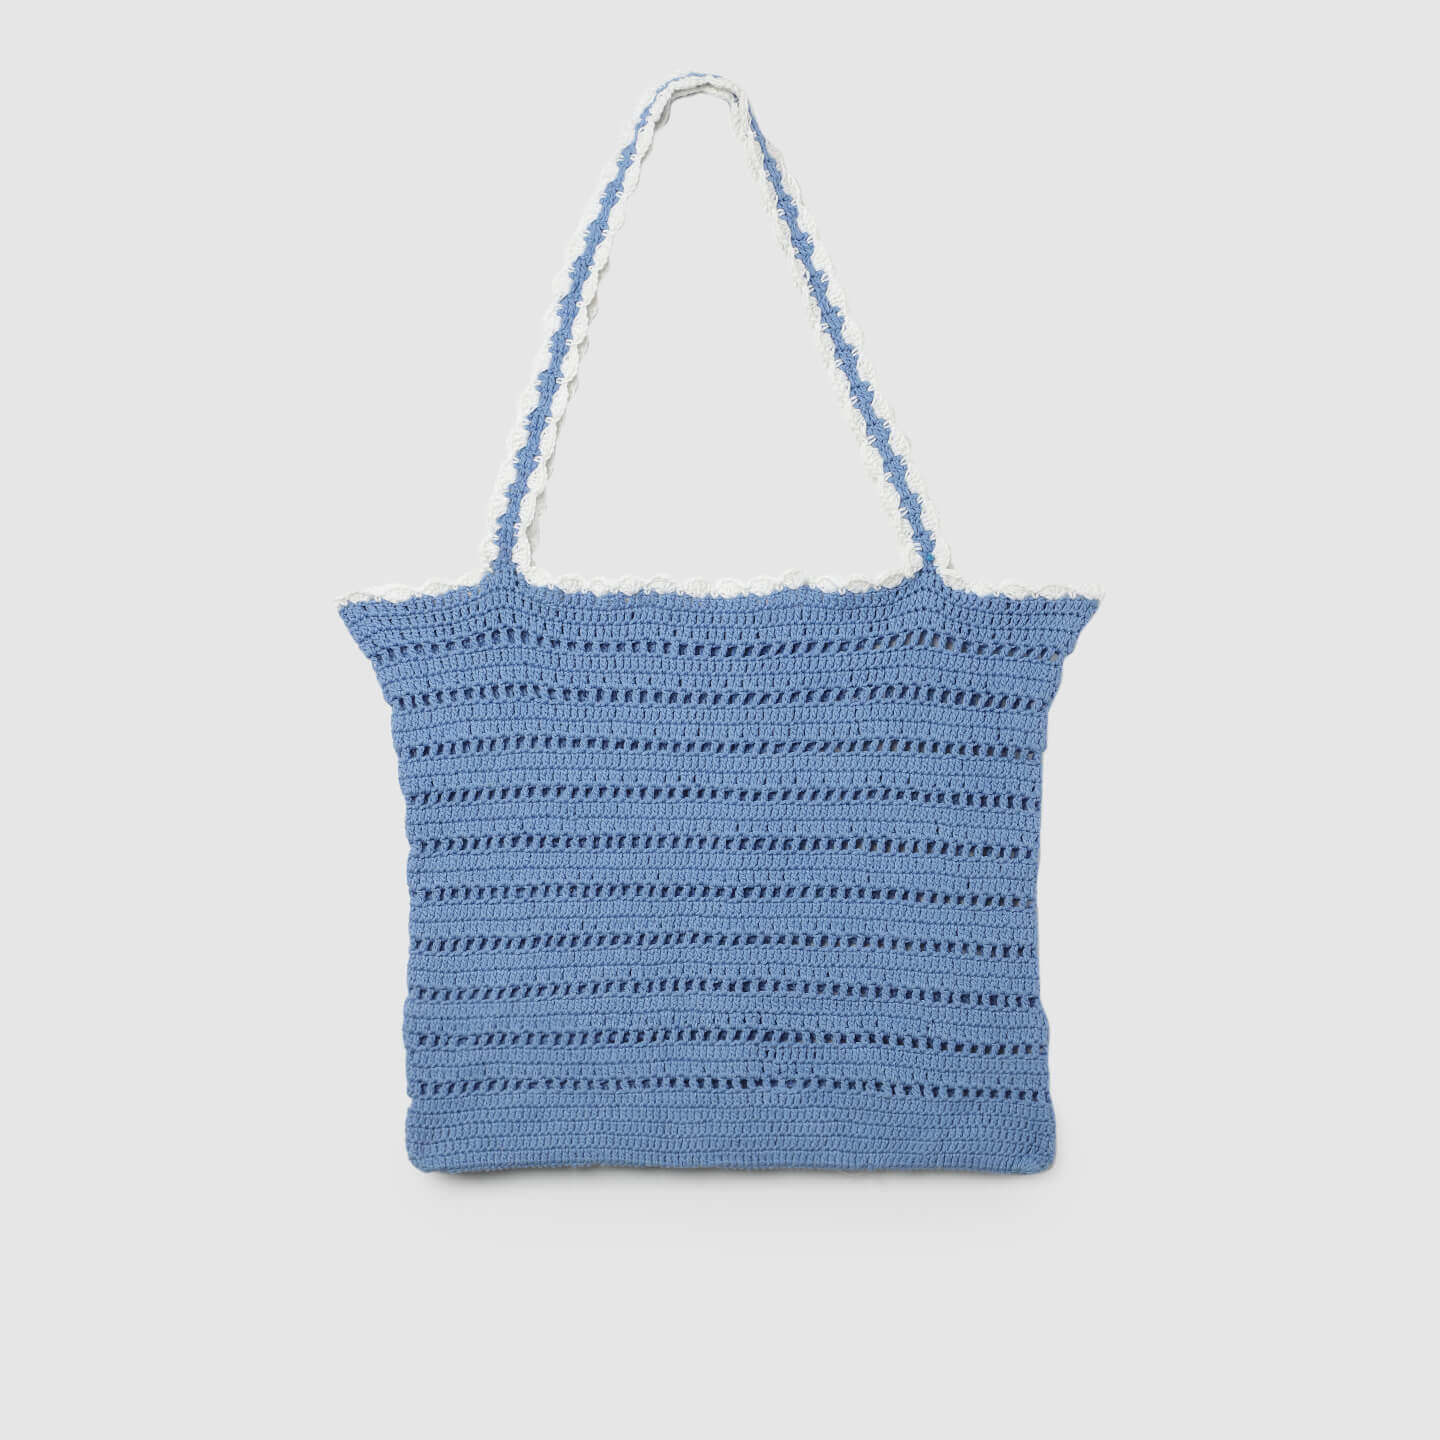 Handmade Crochet Market Bag - Blue & White 3042